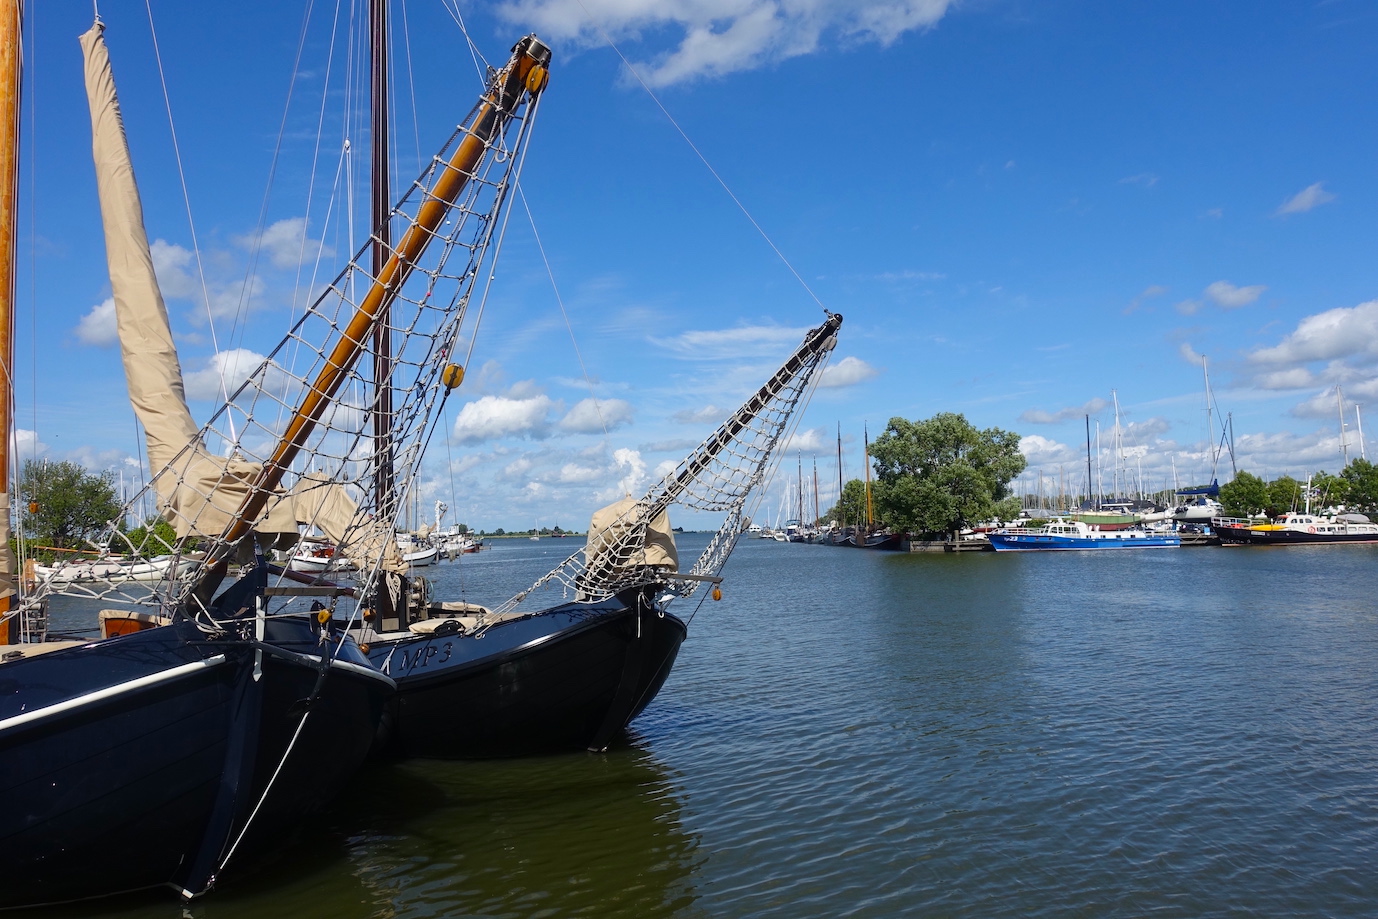 Monnickendam boats